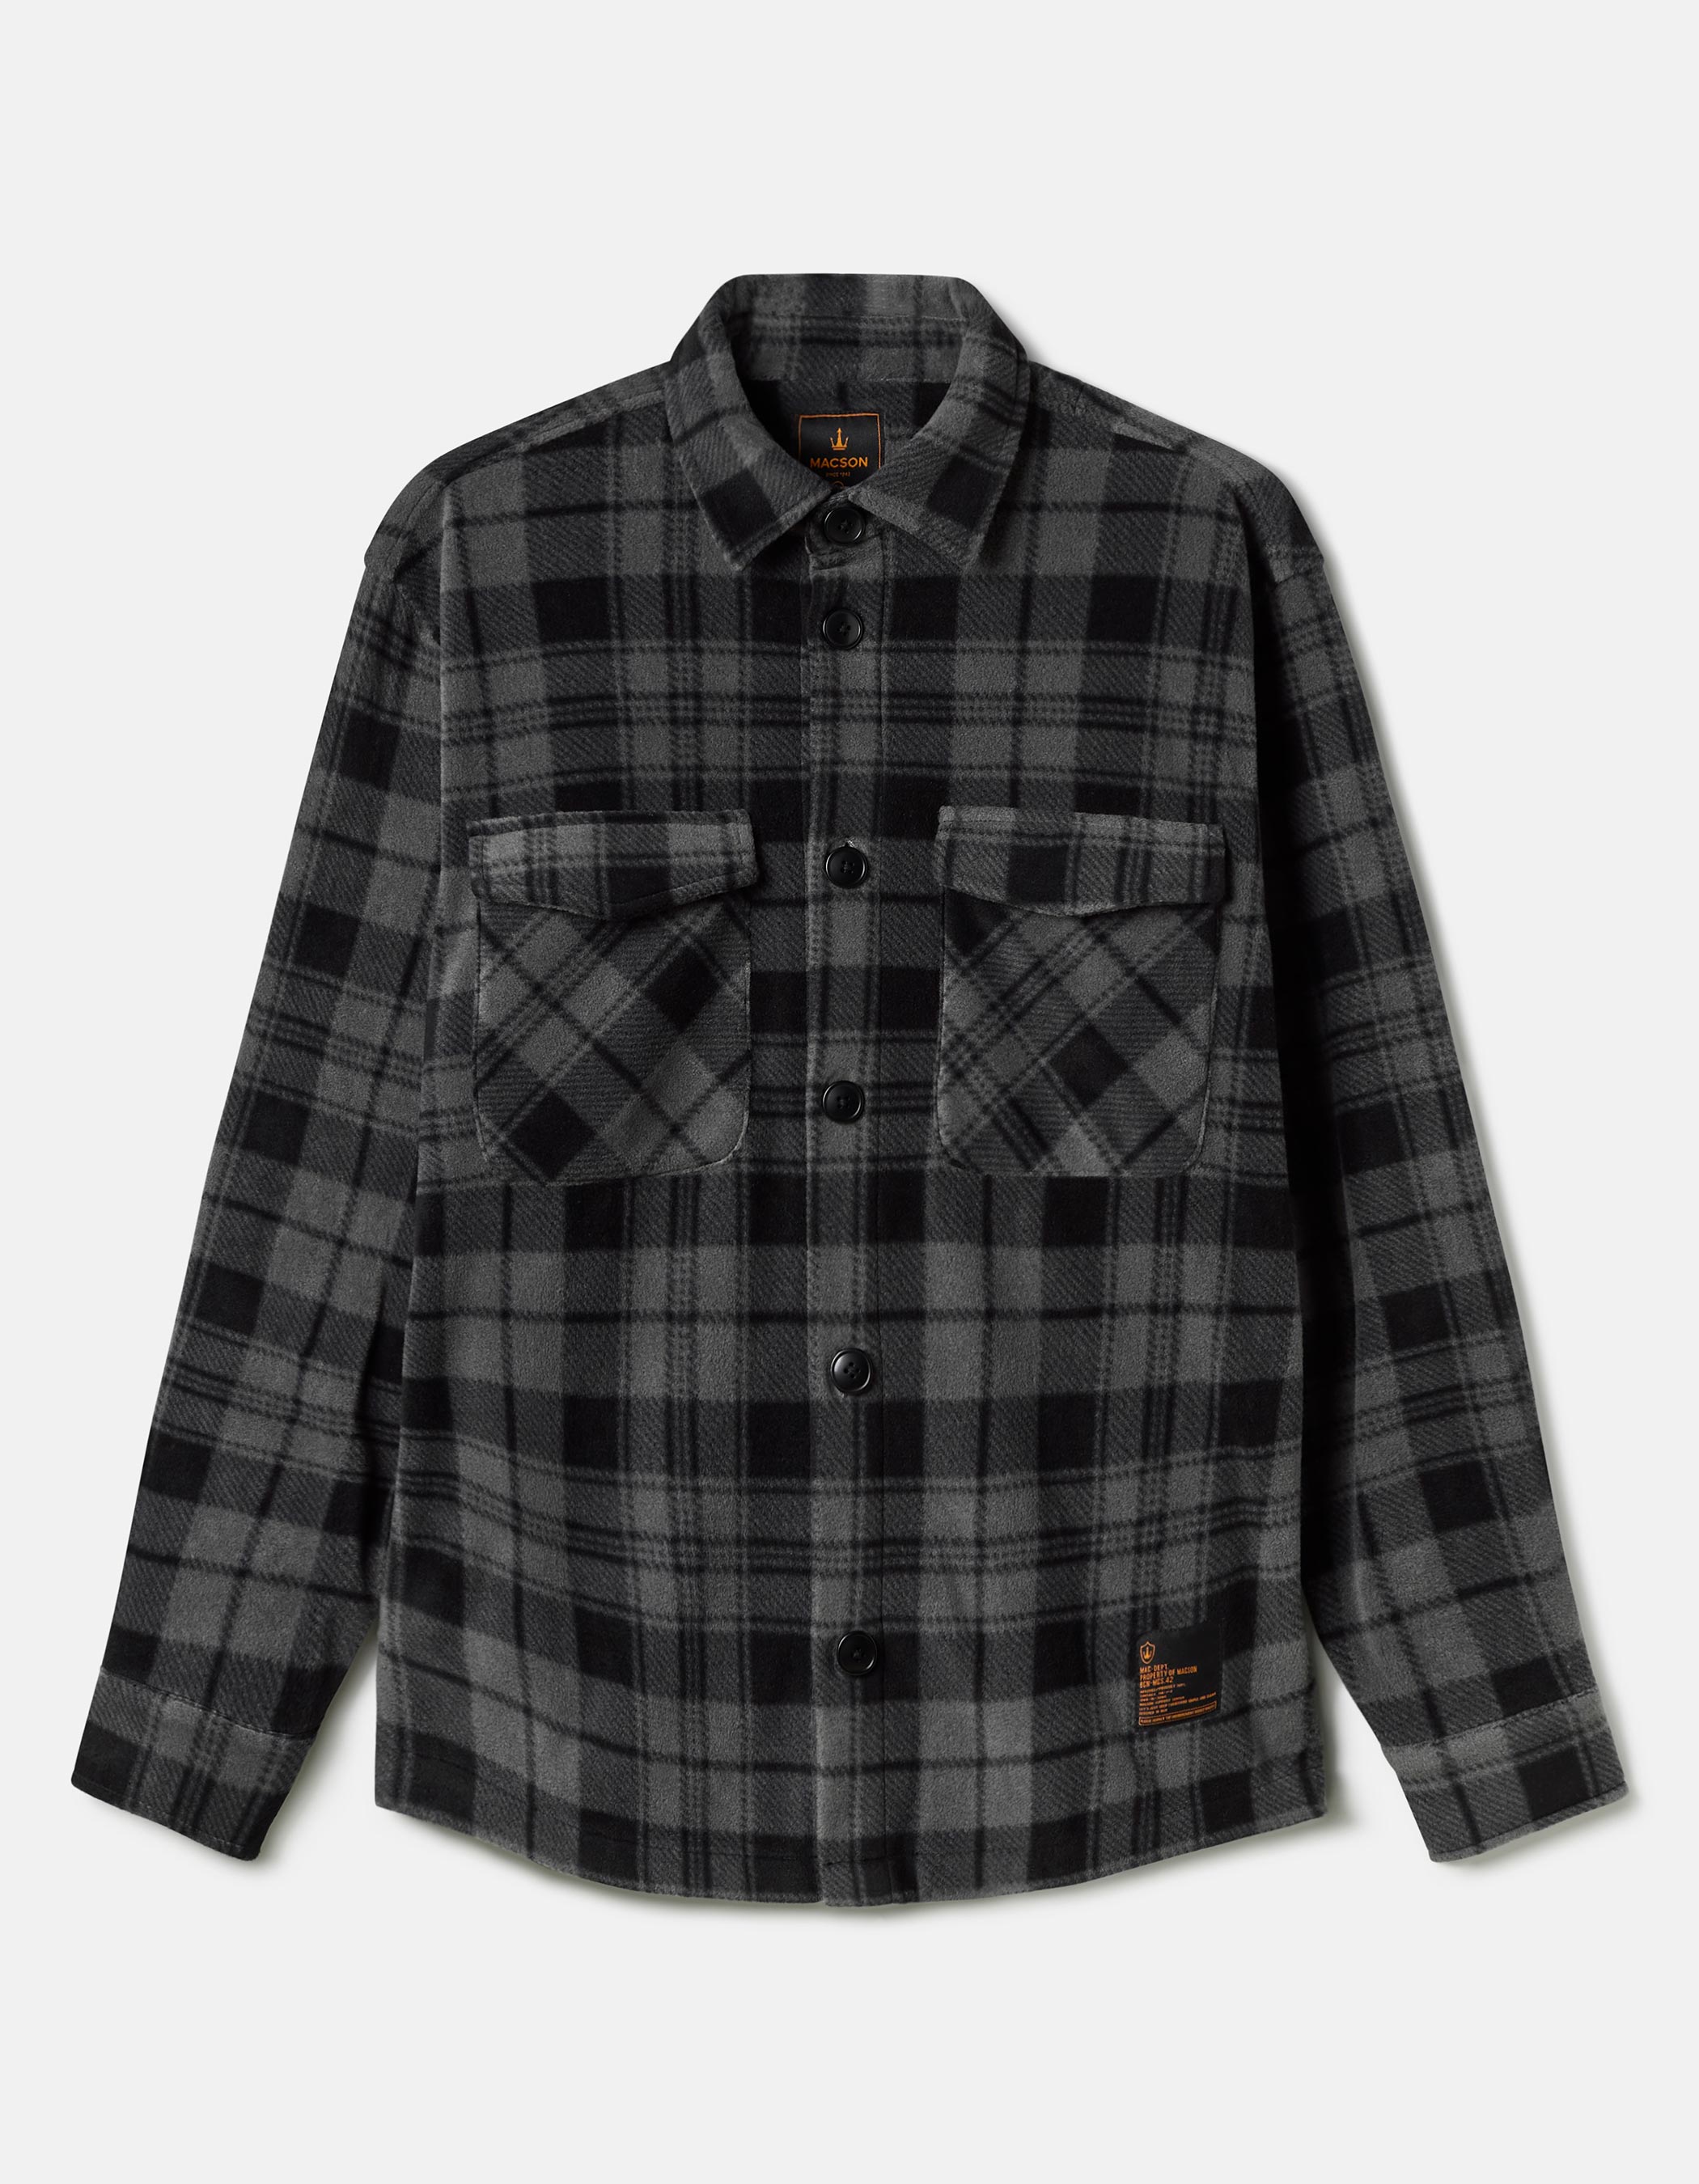 Plaid lumberjack style overshirt